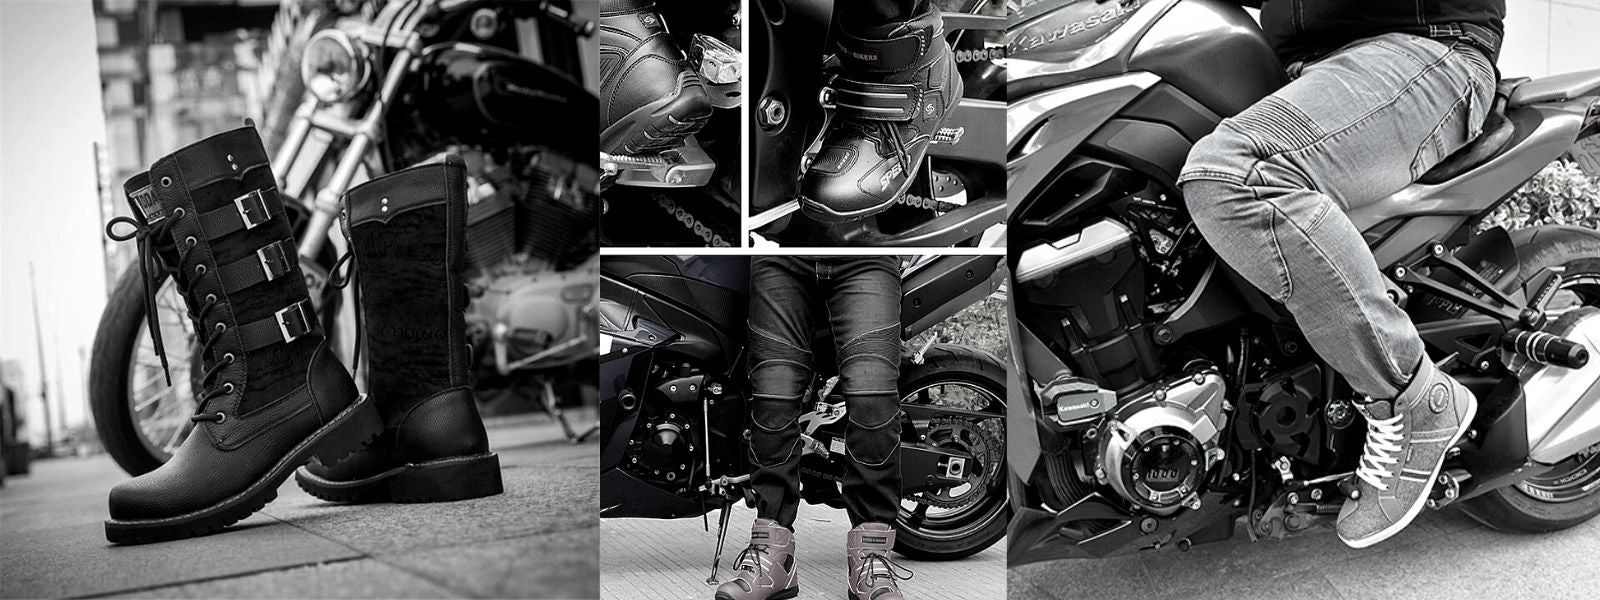 Les chaussures de moto, comment bien choisir? - Tout Sur La Moto